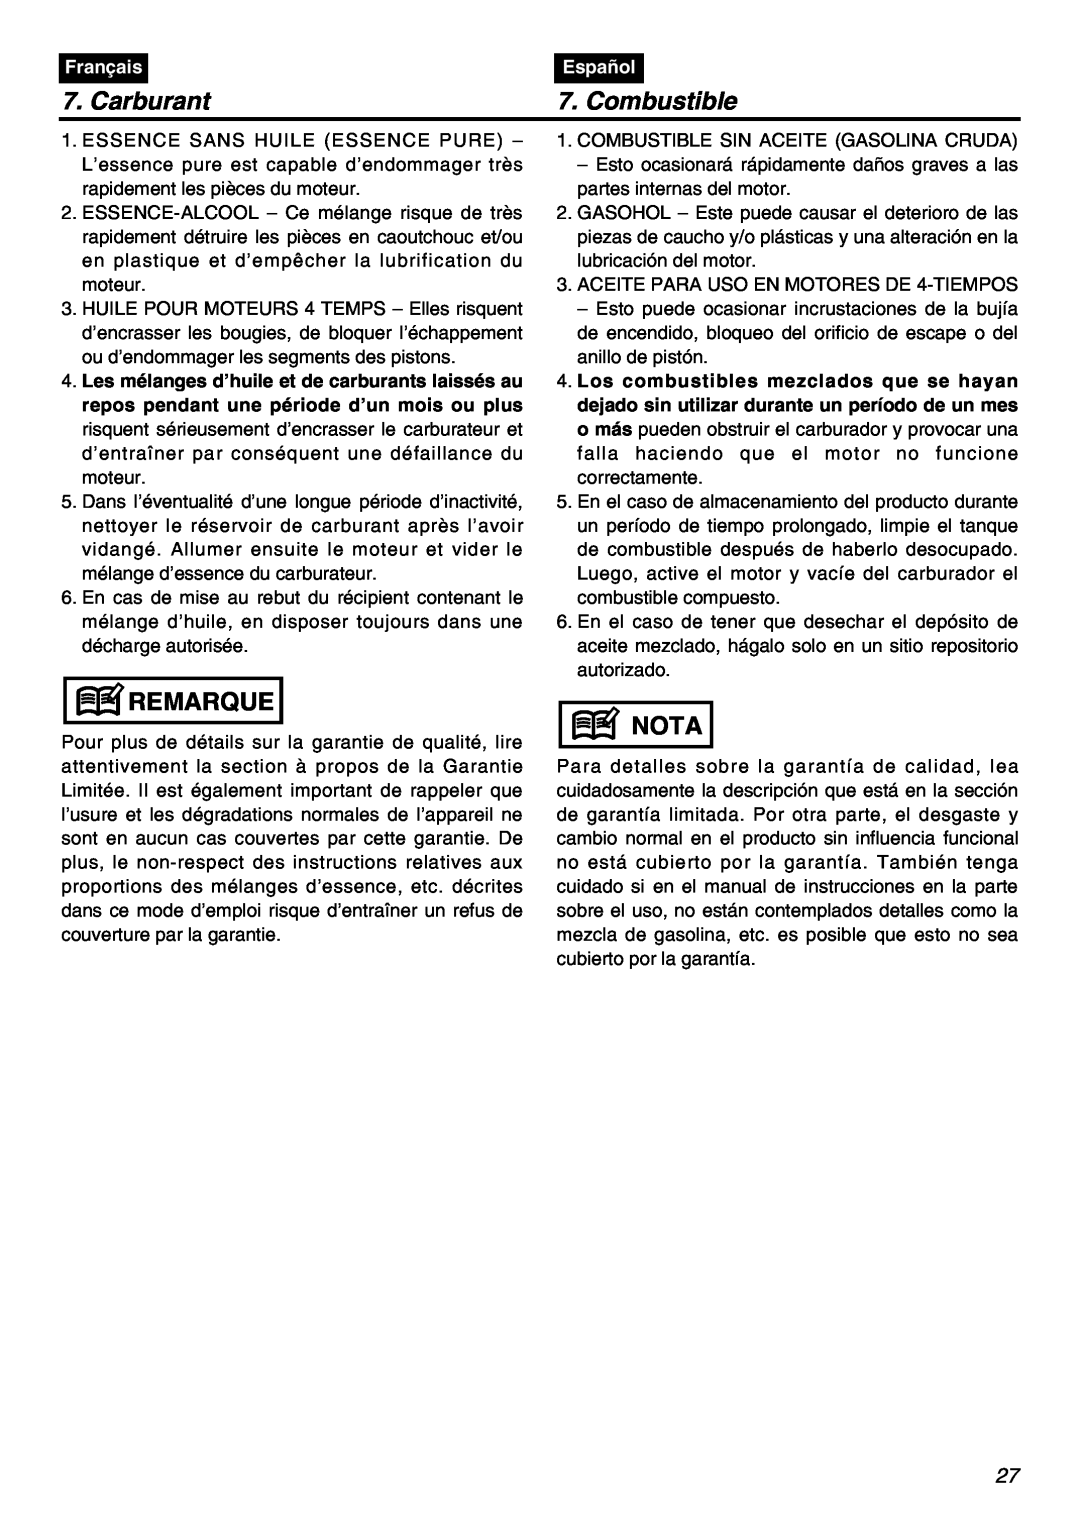 Univex SRTZ2401-CA manual Carburant, Combustible, Remarque, Nota, Français, Español 